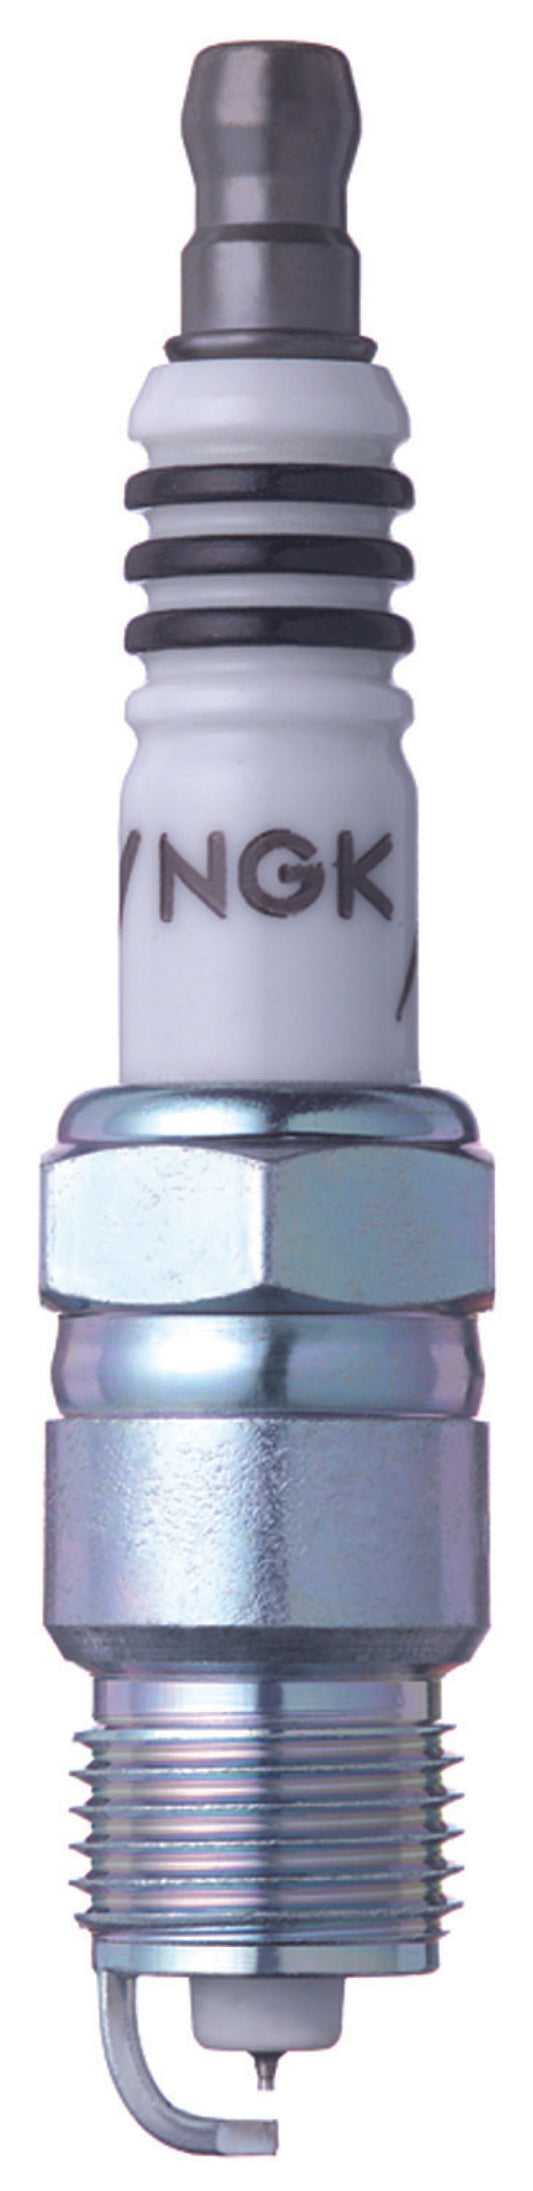 NGK Iridium IX Spark Plug Box of 4 (UR6IX)